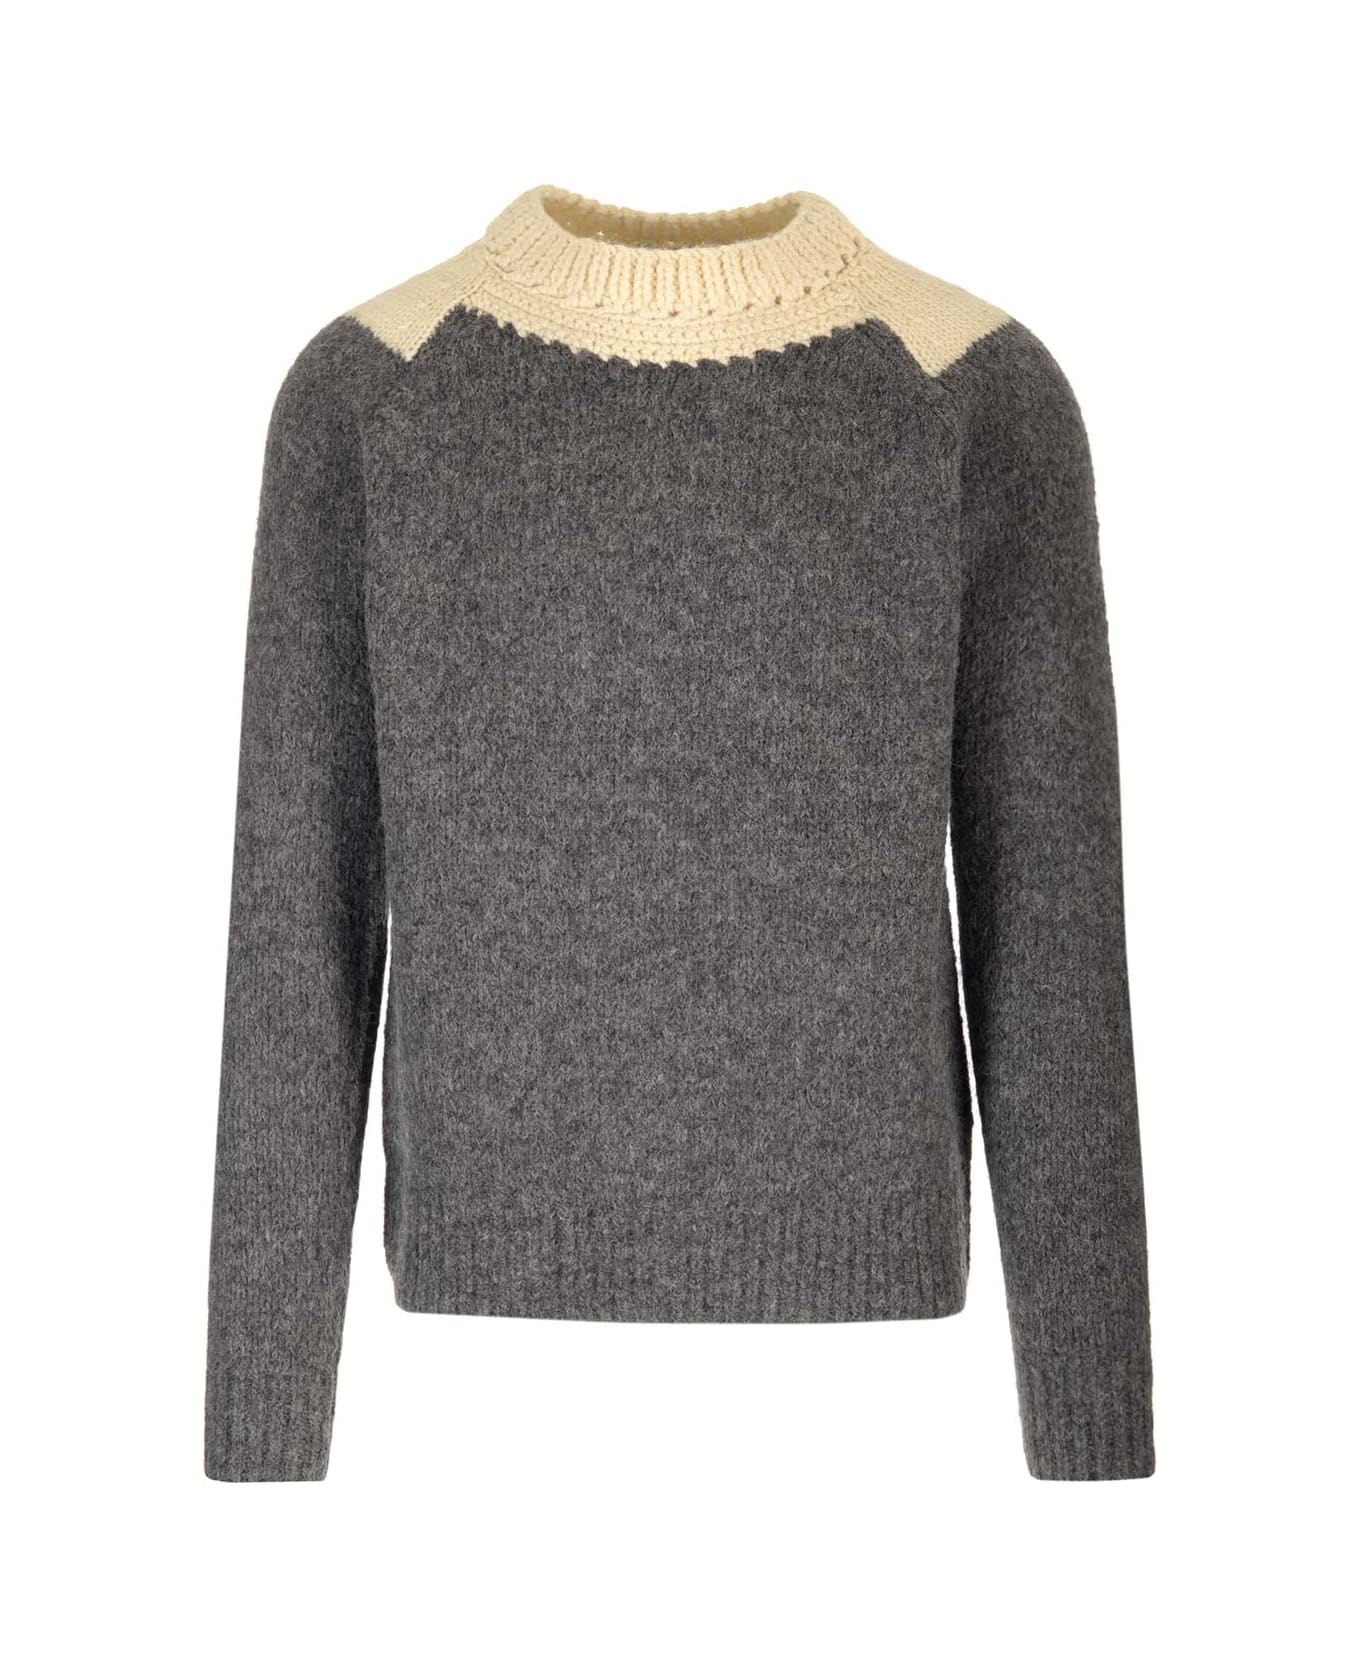 Dries Van Noten 'morgan' Crewneck Sweater - Grey